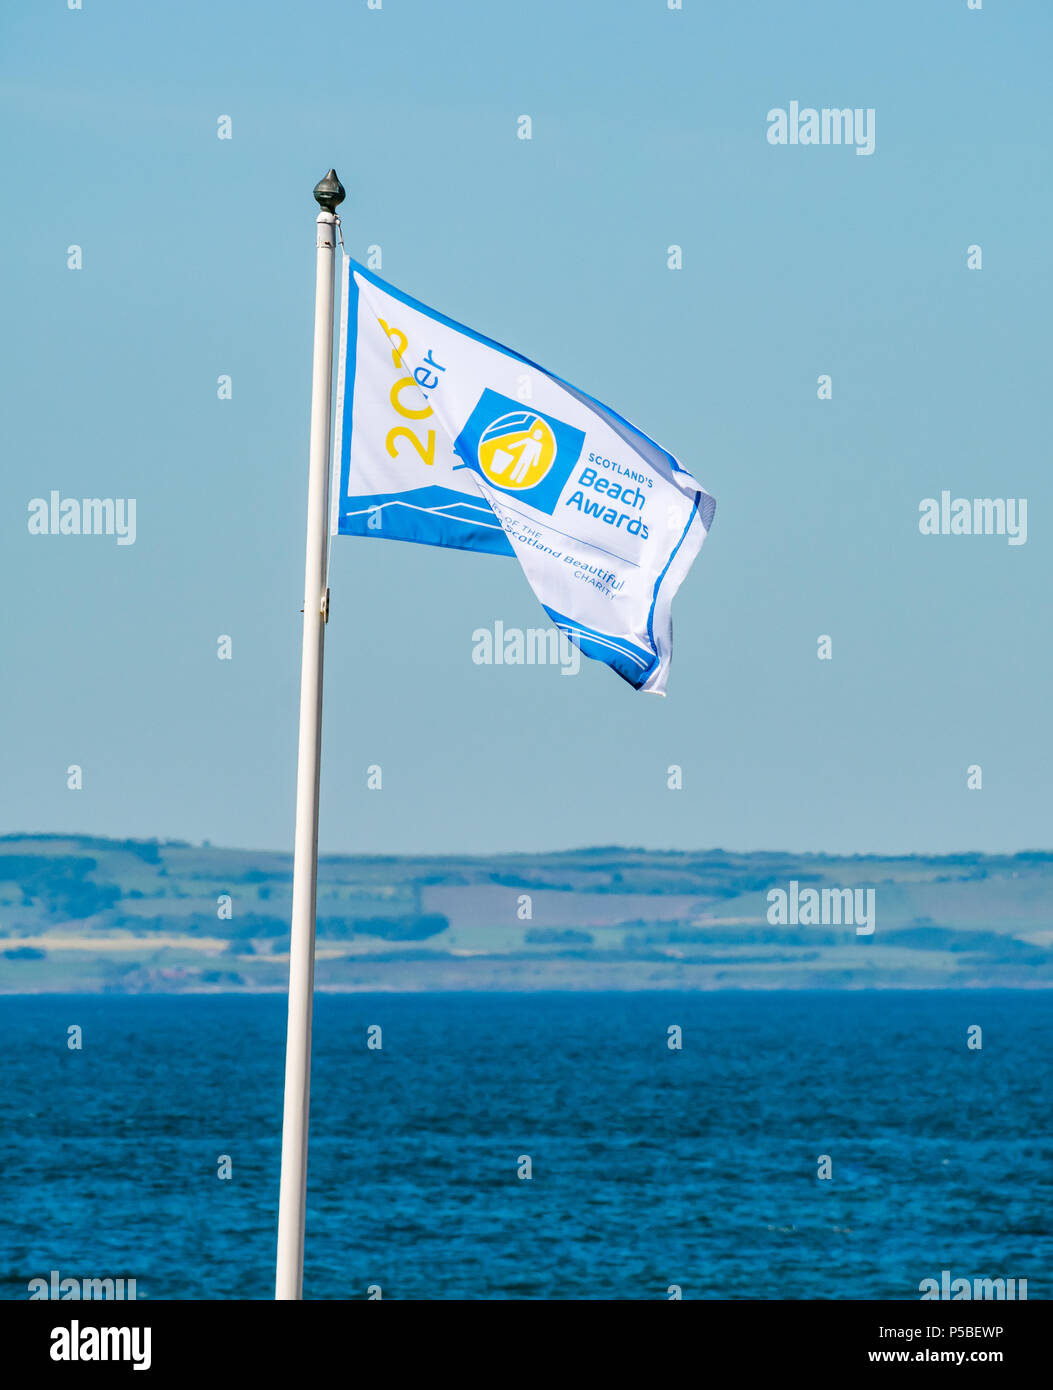 In Scozia la spiaggia pulita premio battenti bandiera, North Berwick, East Lothian, Scozia, Regno Unito nella giornata estiva con cielo blu Foto Stock